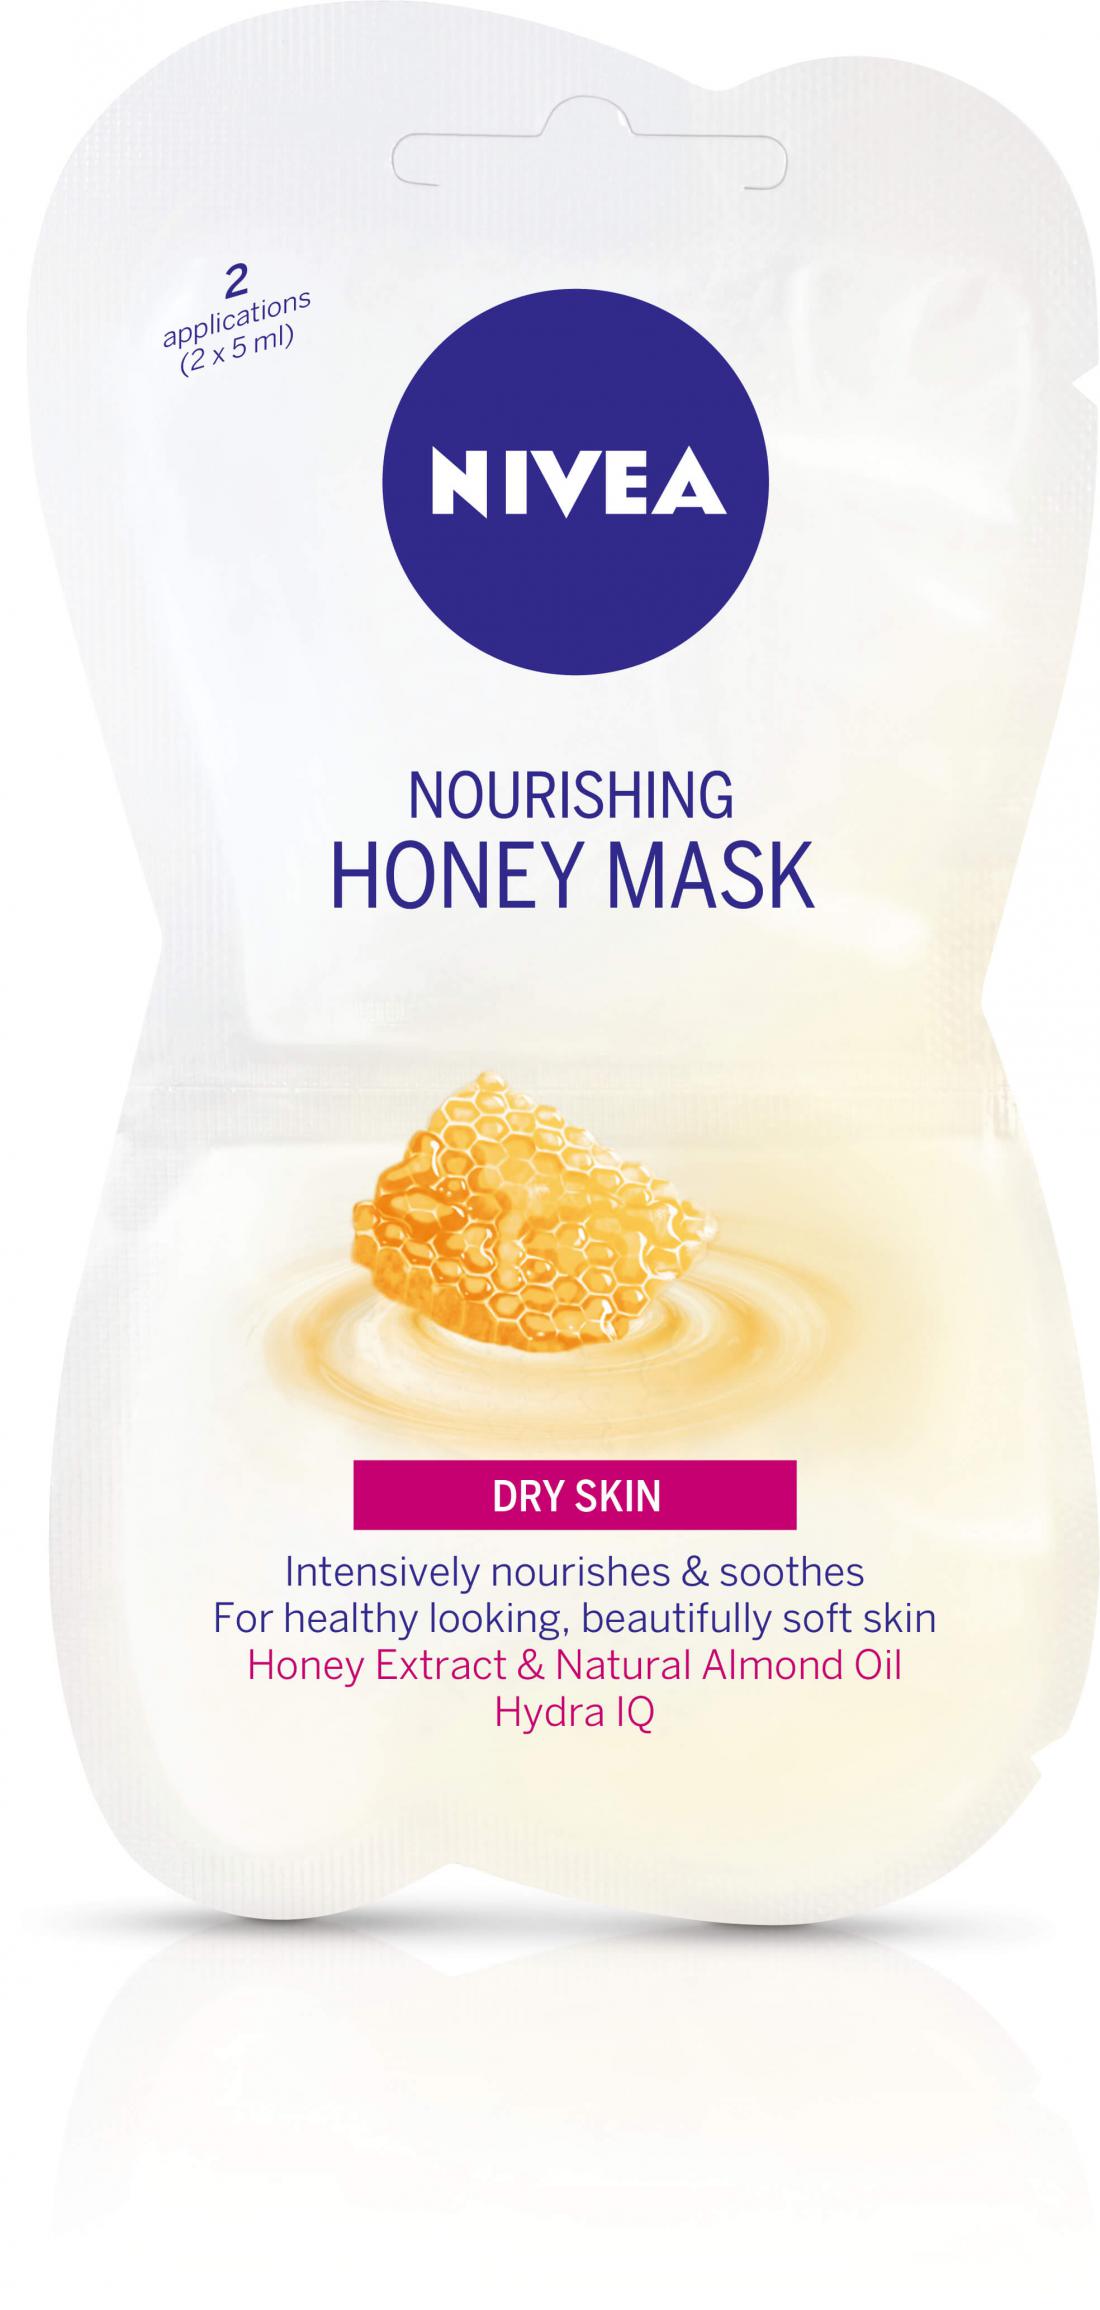 Nivejina medena maska z izvlečkom medu in naravnim mandljevim oljem, ki kožo intenzivno nahrani in pomiri.